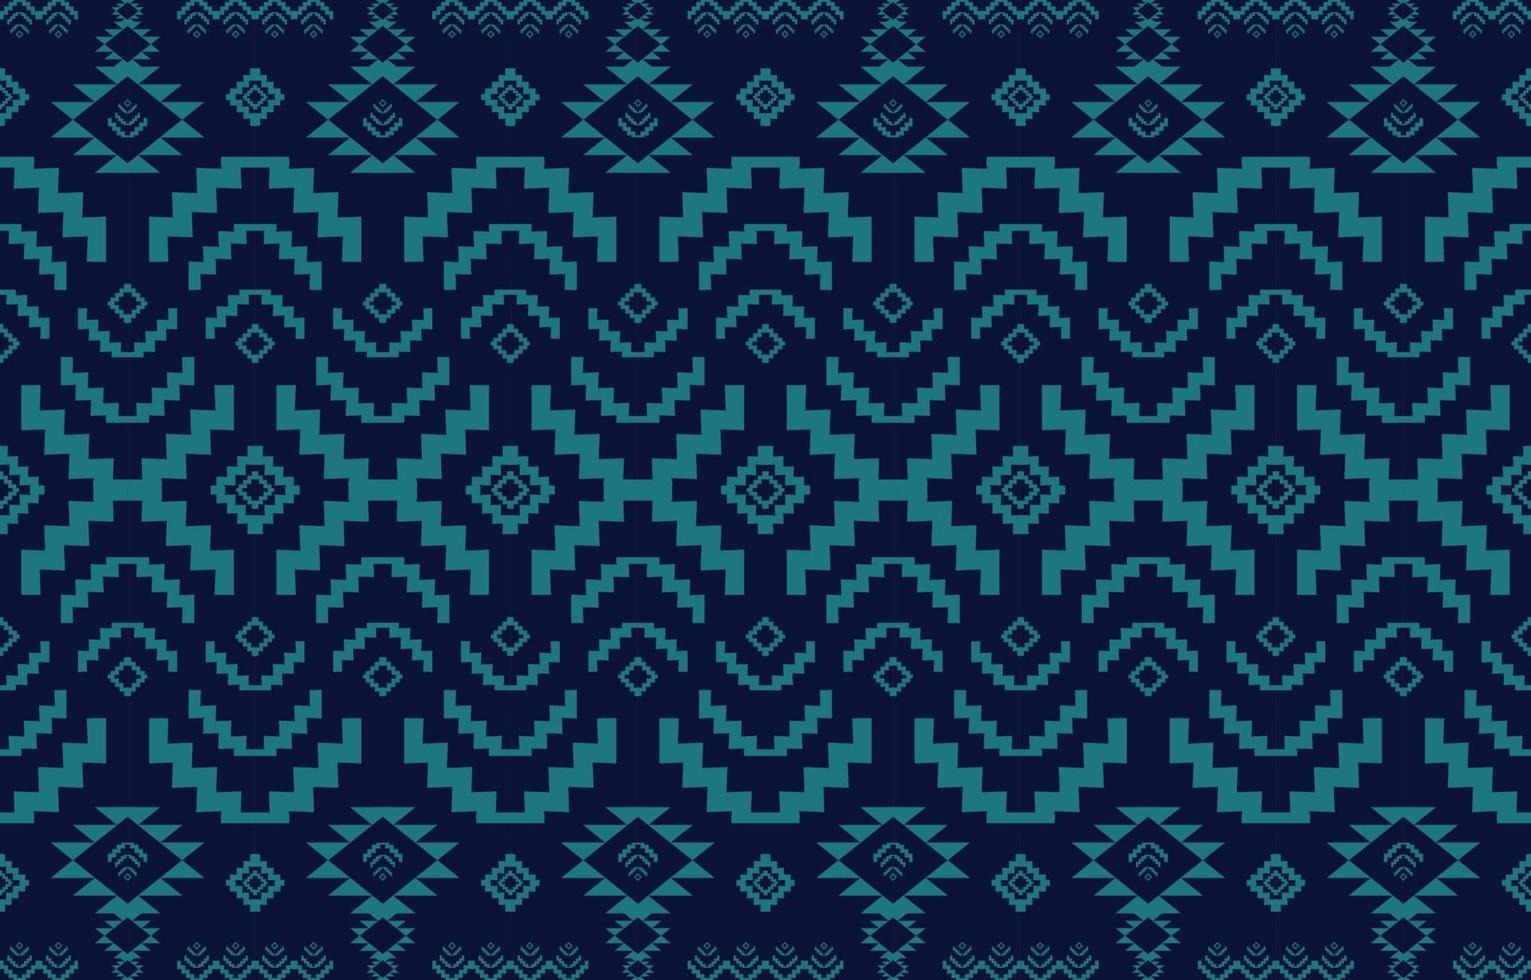 tecido navajo sem costura padrão geométrico tribal étnica tradicional fundo,elementos de design nativo americano, design para tapete,papel de parede,vestuário,tapete,interior,bordado de ilustração vetorial. vetor